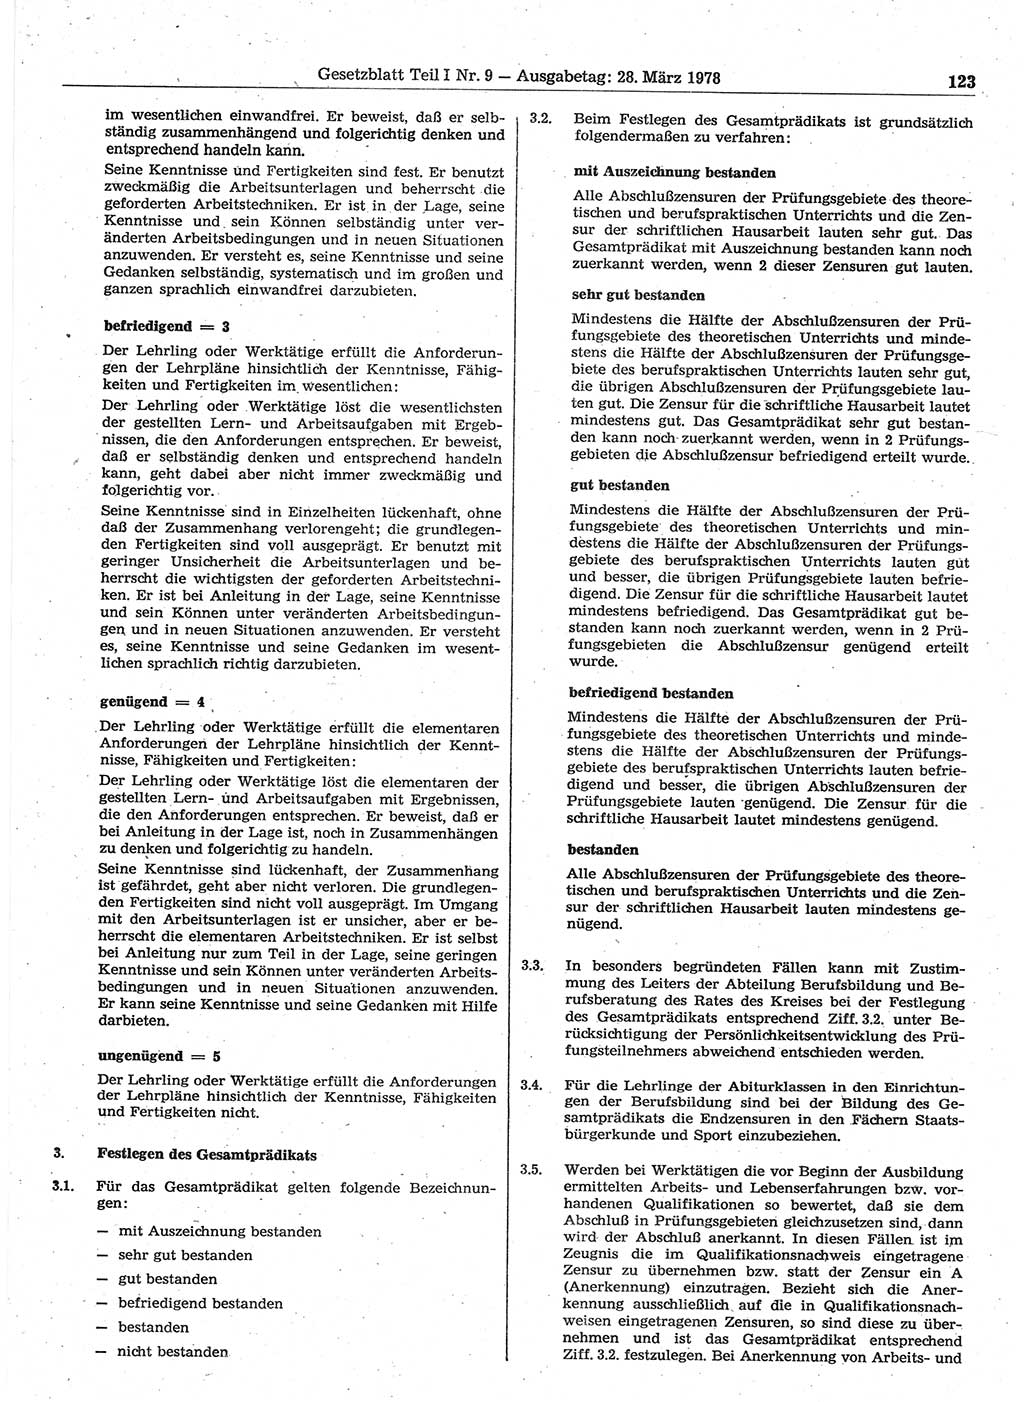 Gesetzblatt (GBl.) der Deutschen Demokratischen Republik (DDR) Teil Ⅰ 1978, Seite 123 (GBl. DDR Ⅰ 1978, S. 123)